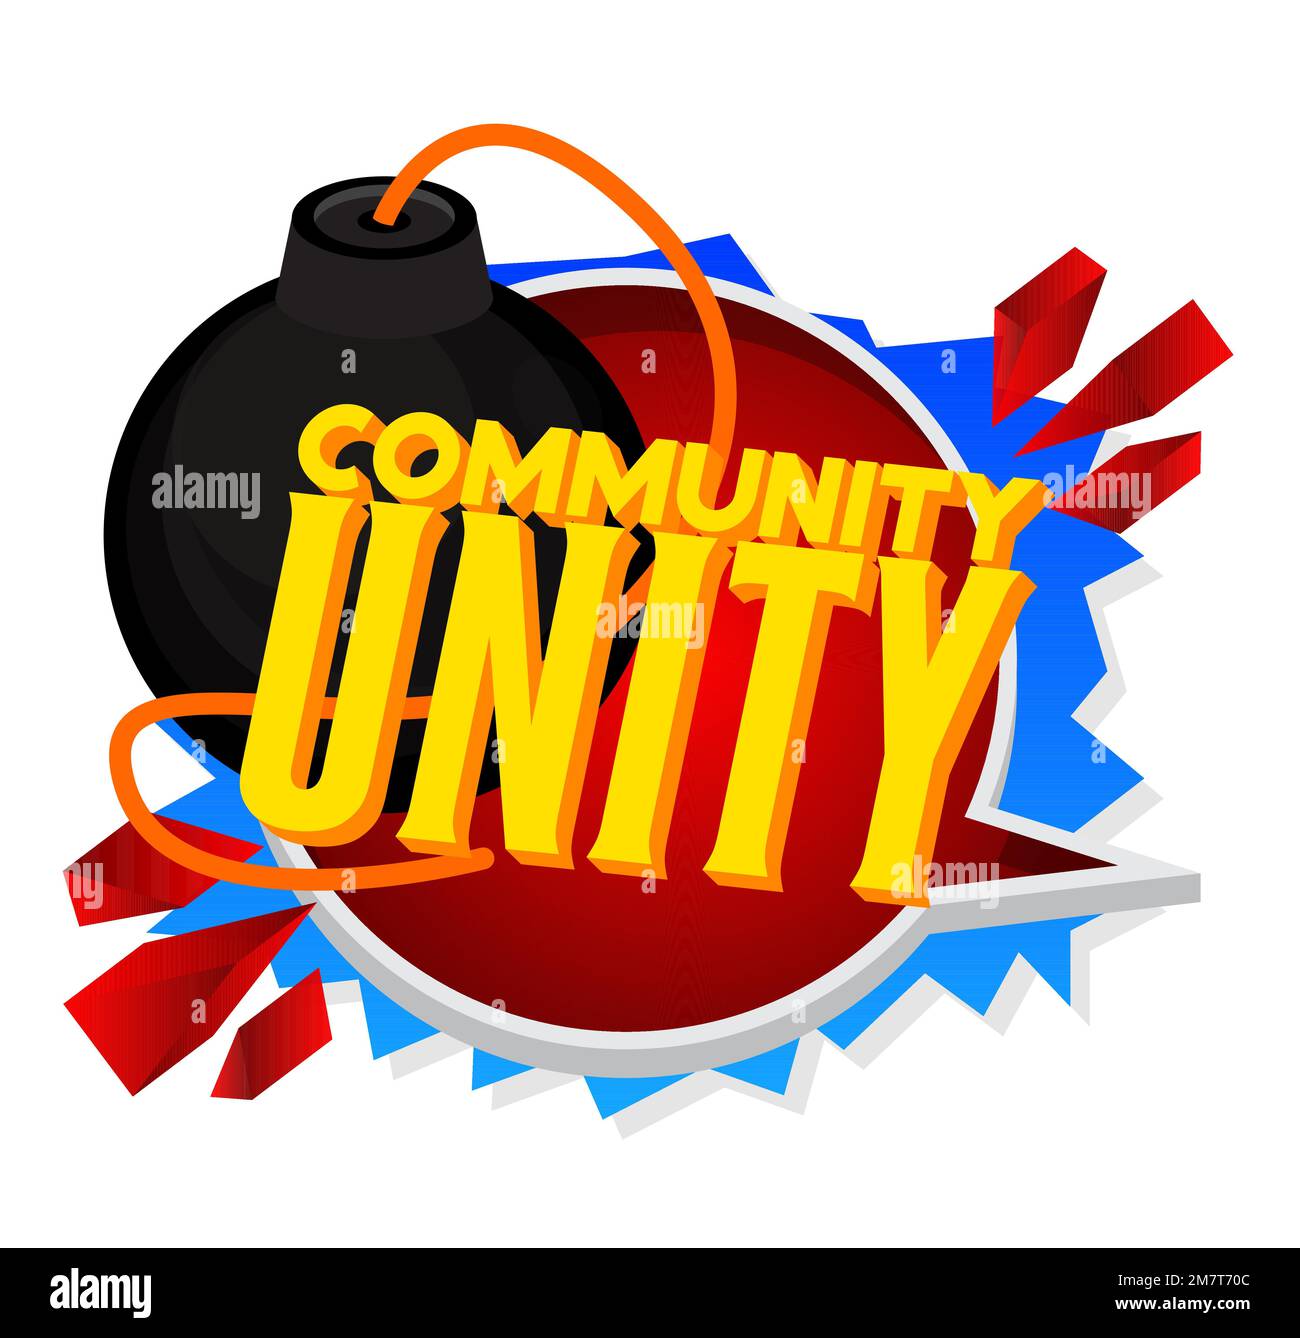 Comunità Unity testo con bomba nera. Illuminazione vettoriale cartone animato. Illustrazione Vettoriale